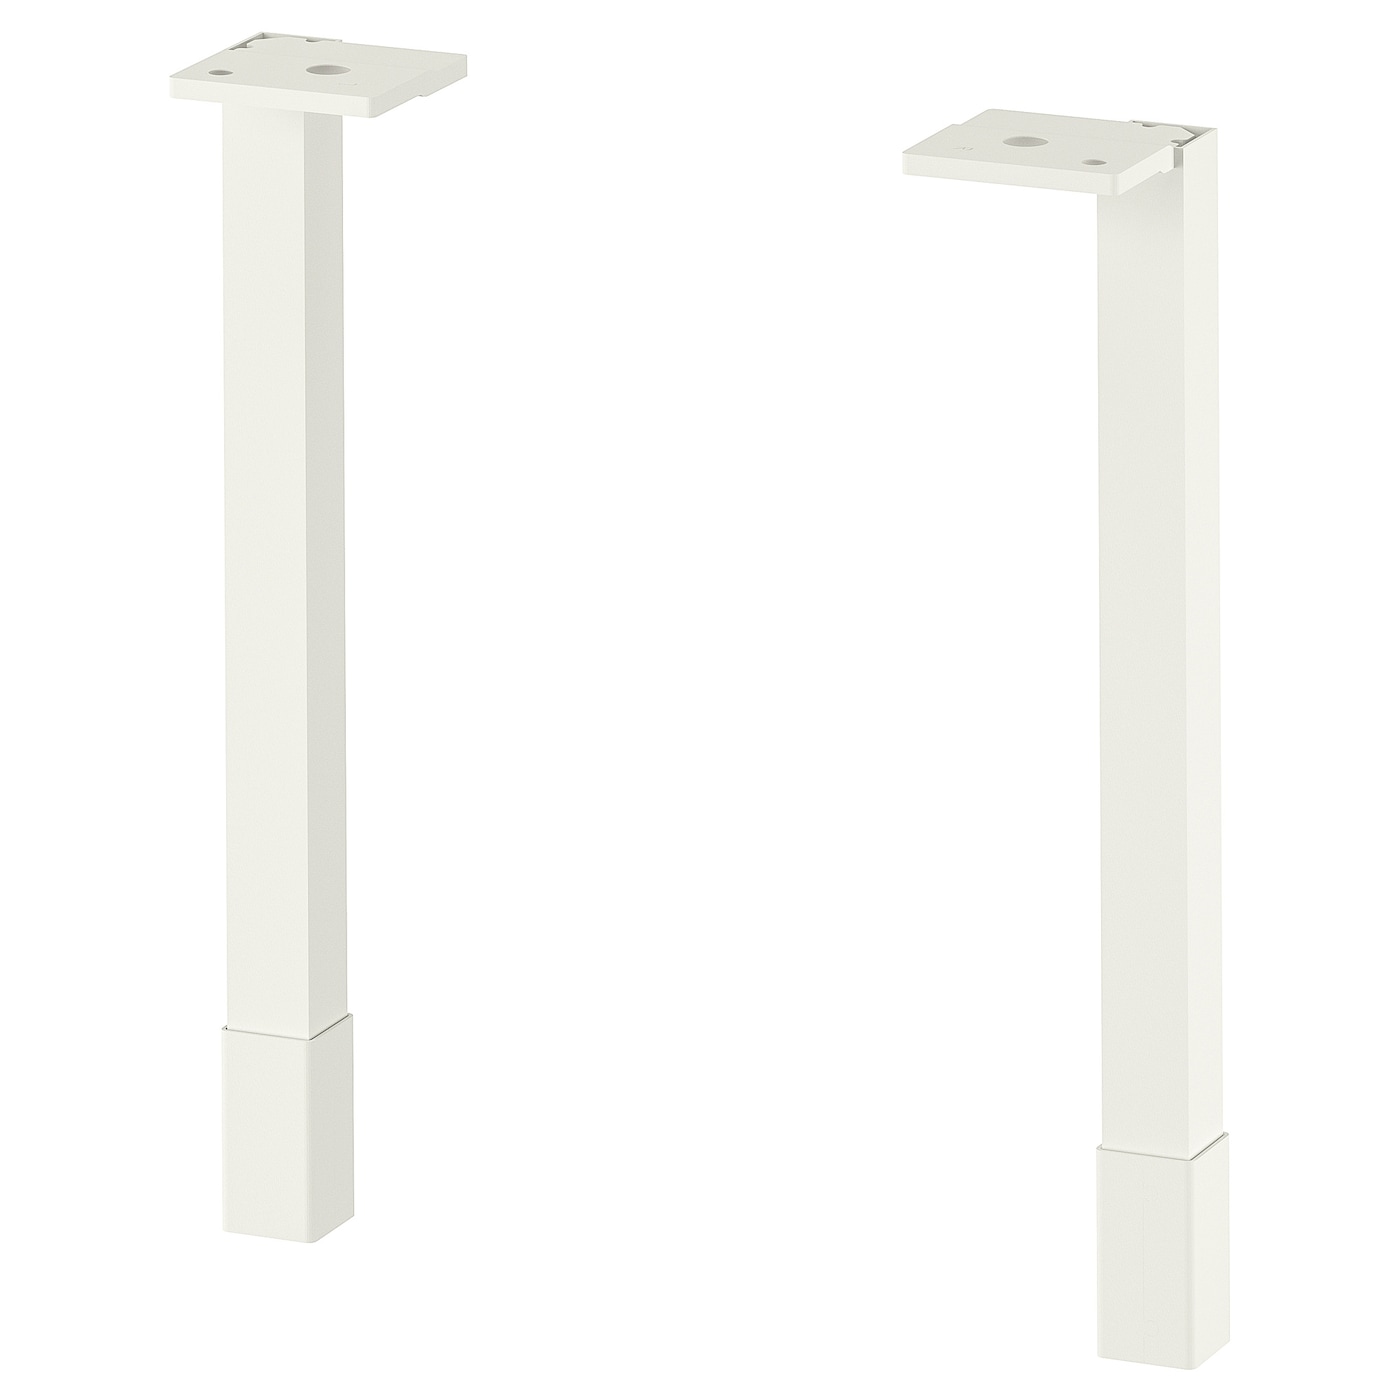 Ножка - IKEA ENHET, 23.5 см, белый, ЭНХЕТ ИКЕА